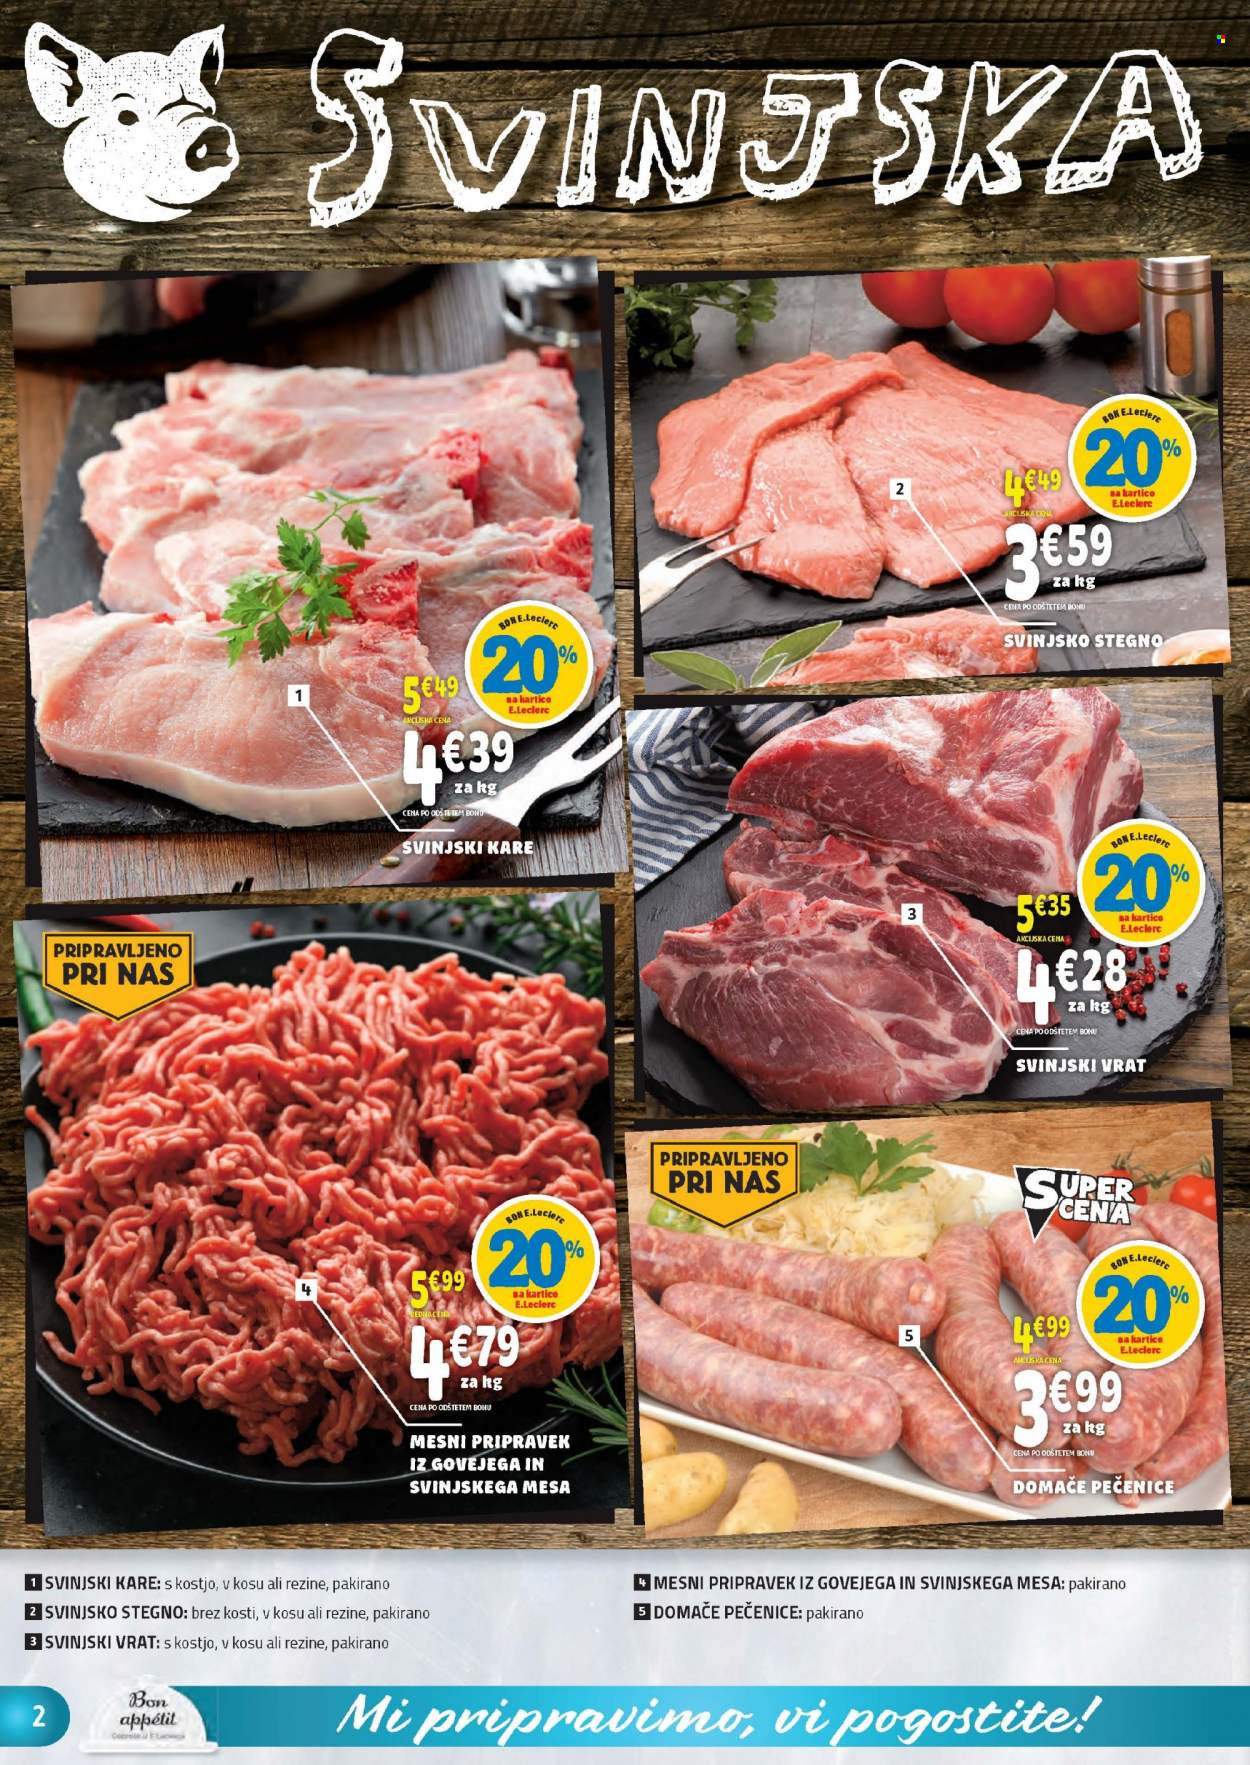 thumbnail - E.Leclerc katalog - 20.10.2021 - 30.10.2021 - Ponudba izdelkov - stegno, kare, svinjski kare, svinjski vrat, svinjsko stegno, svinjsko meso. Stran 2.